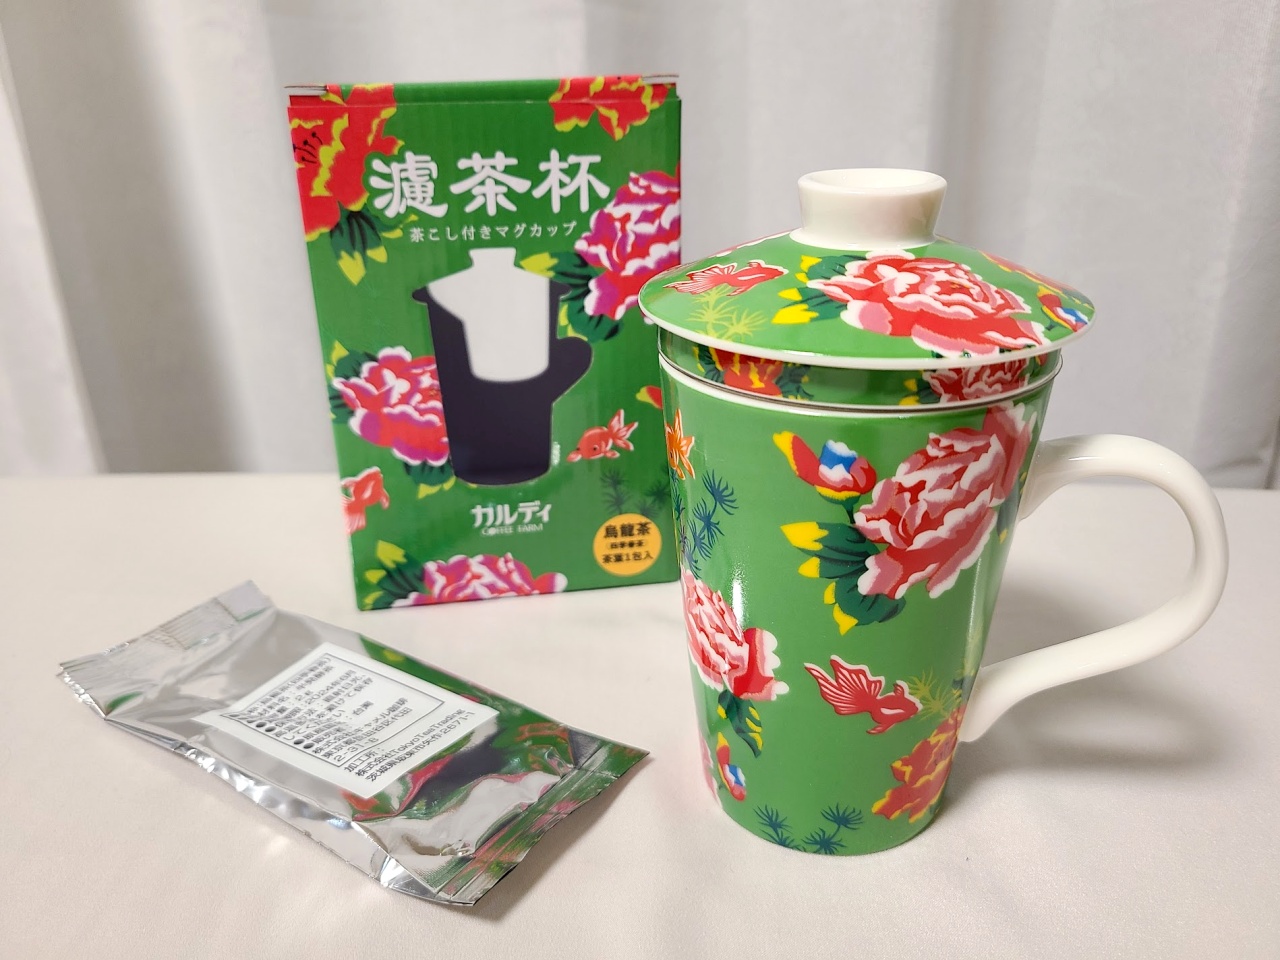 カルディ】台湾フェアで入手した『茶こし付きマグカップ』が超便利！ そして説明書に記載されていた台湾における驚きのお茶事情とは…？ |  ロケットニュース24